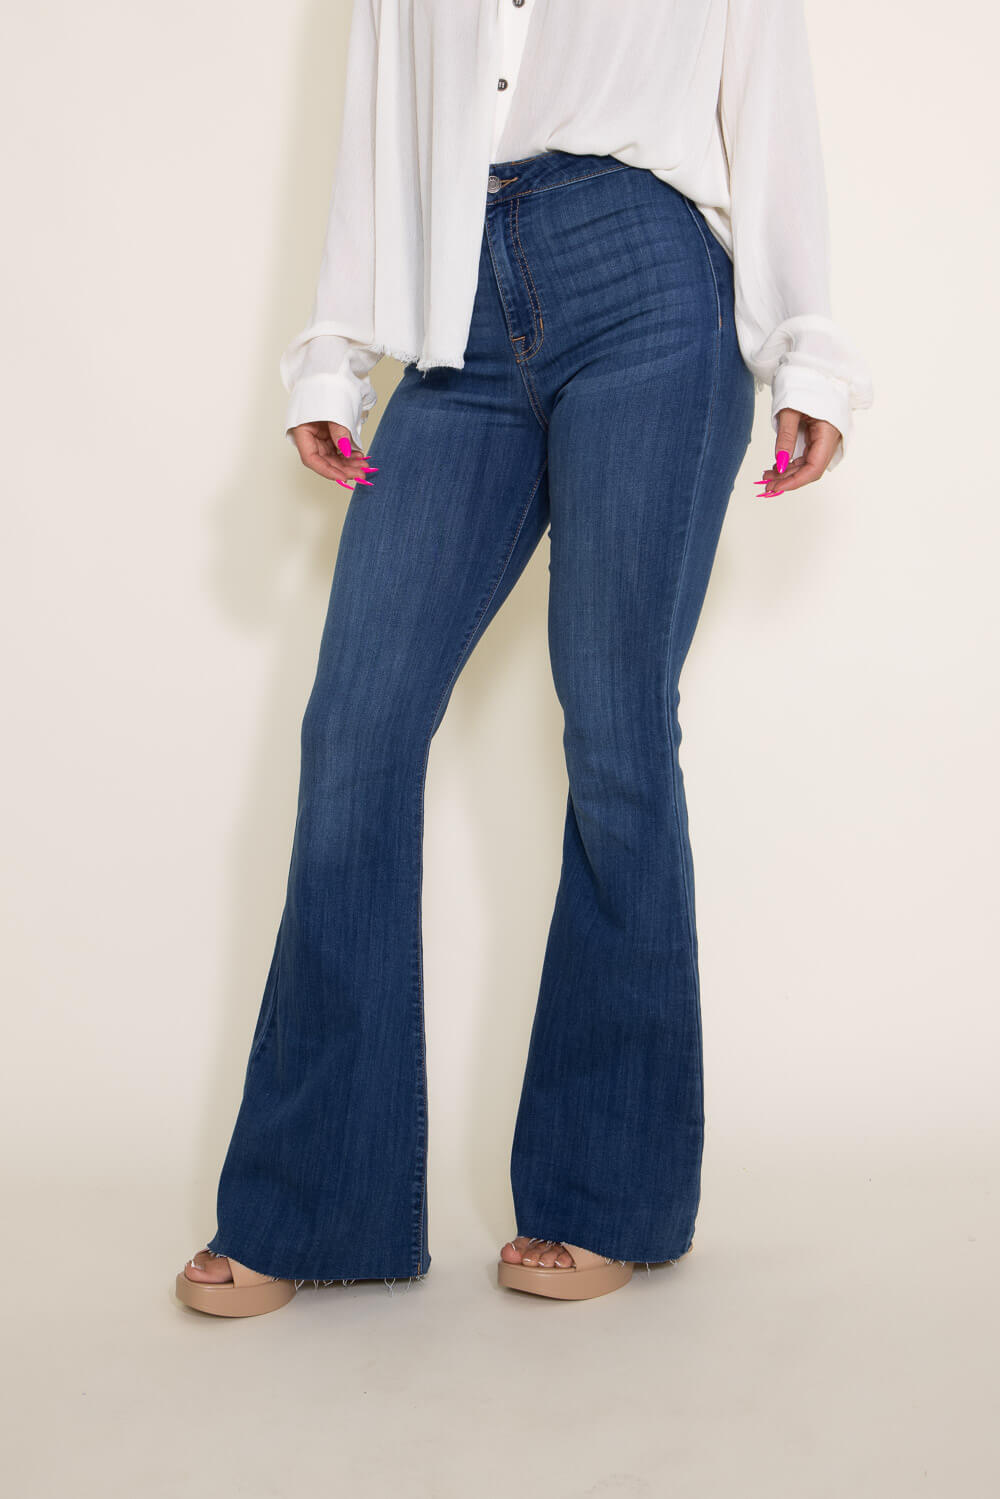 https://www.gliks.com/cdn/shop/files/002-Cello-High-Rise-Super-Flare-Jeans-for-Women-WV36808M-2.jpg?v=1684165903